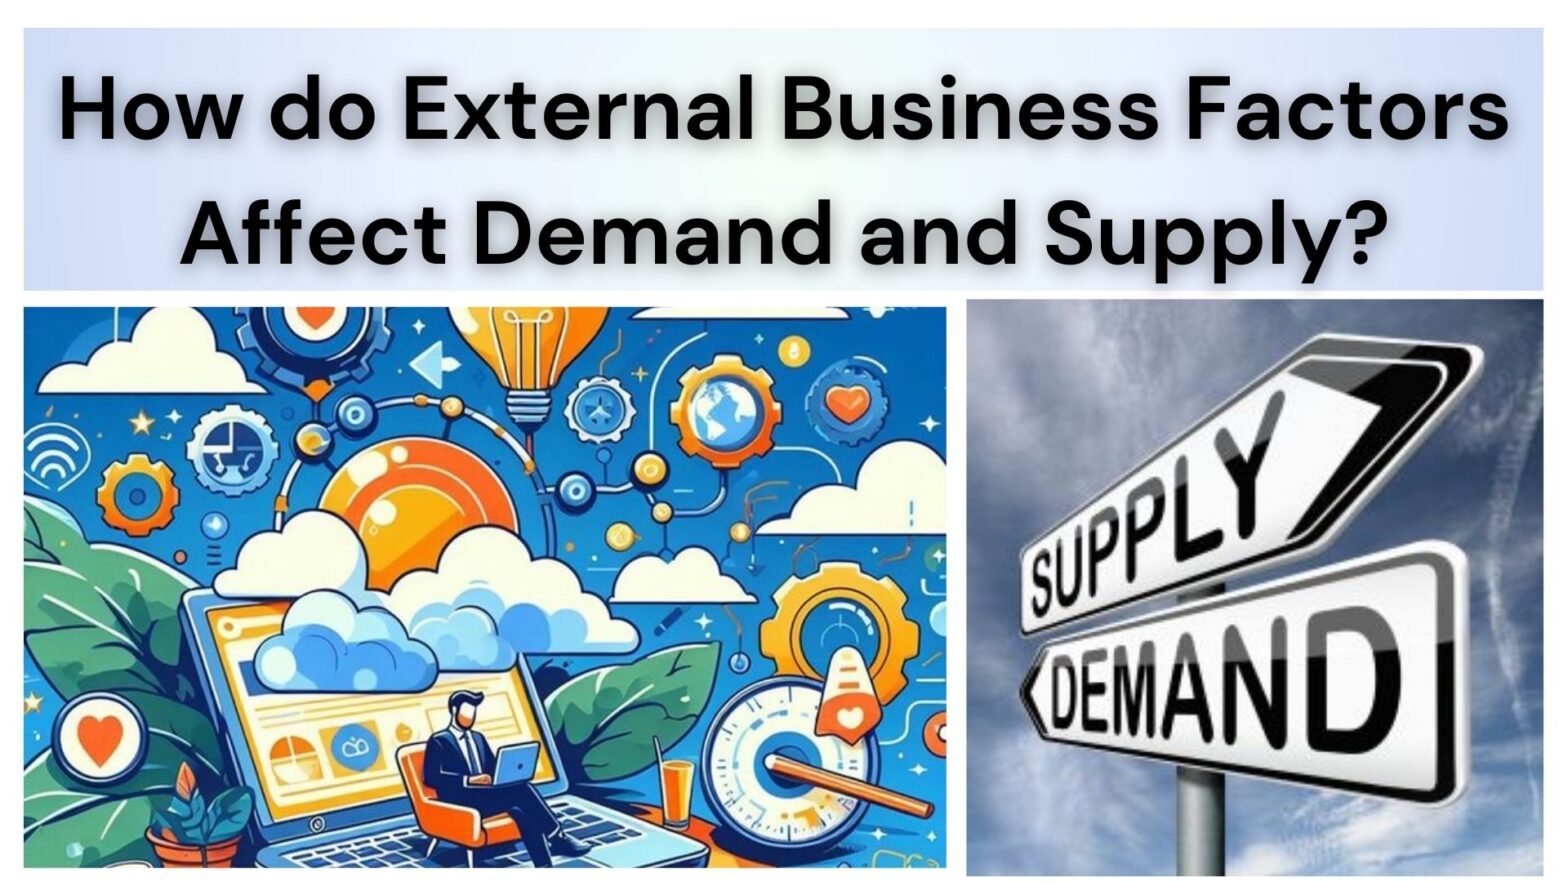 External Business Factors